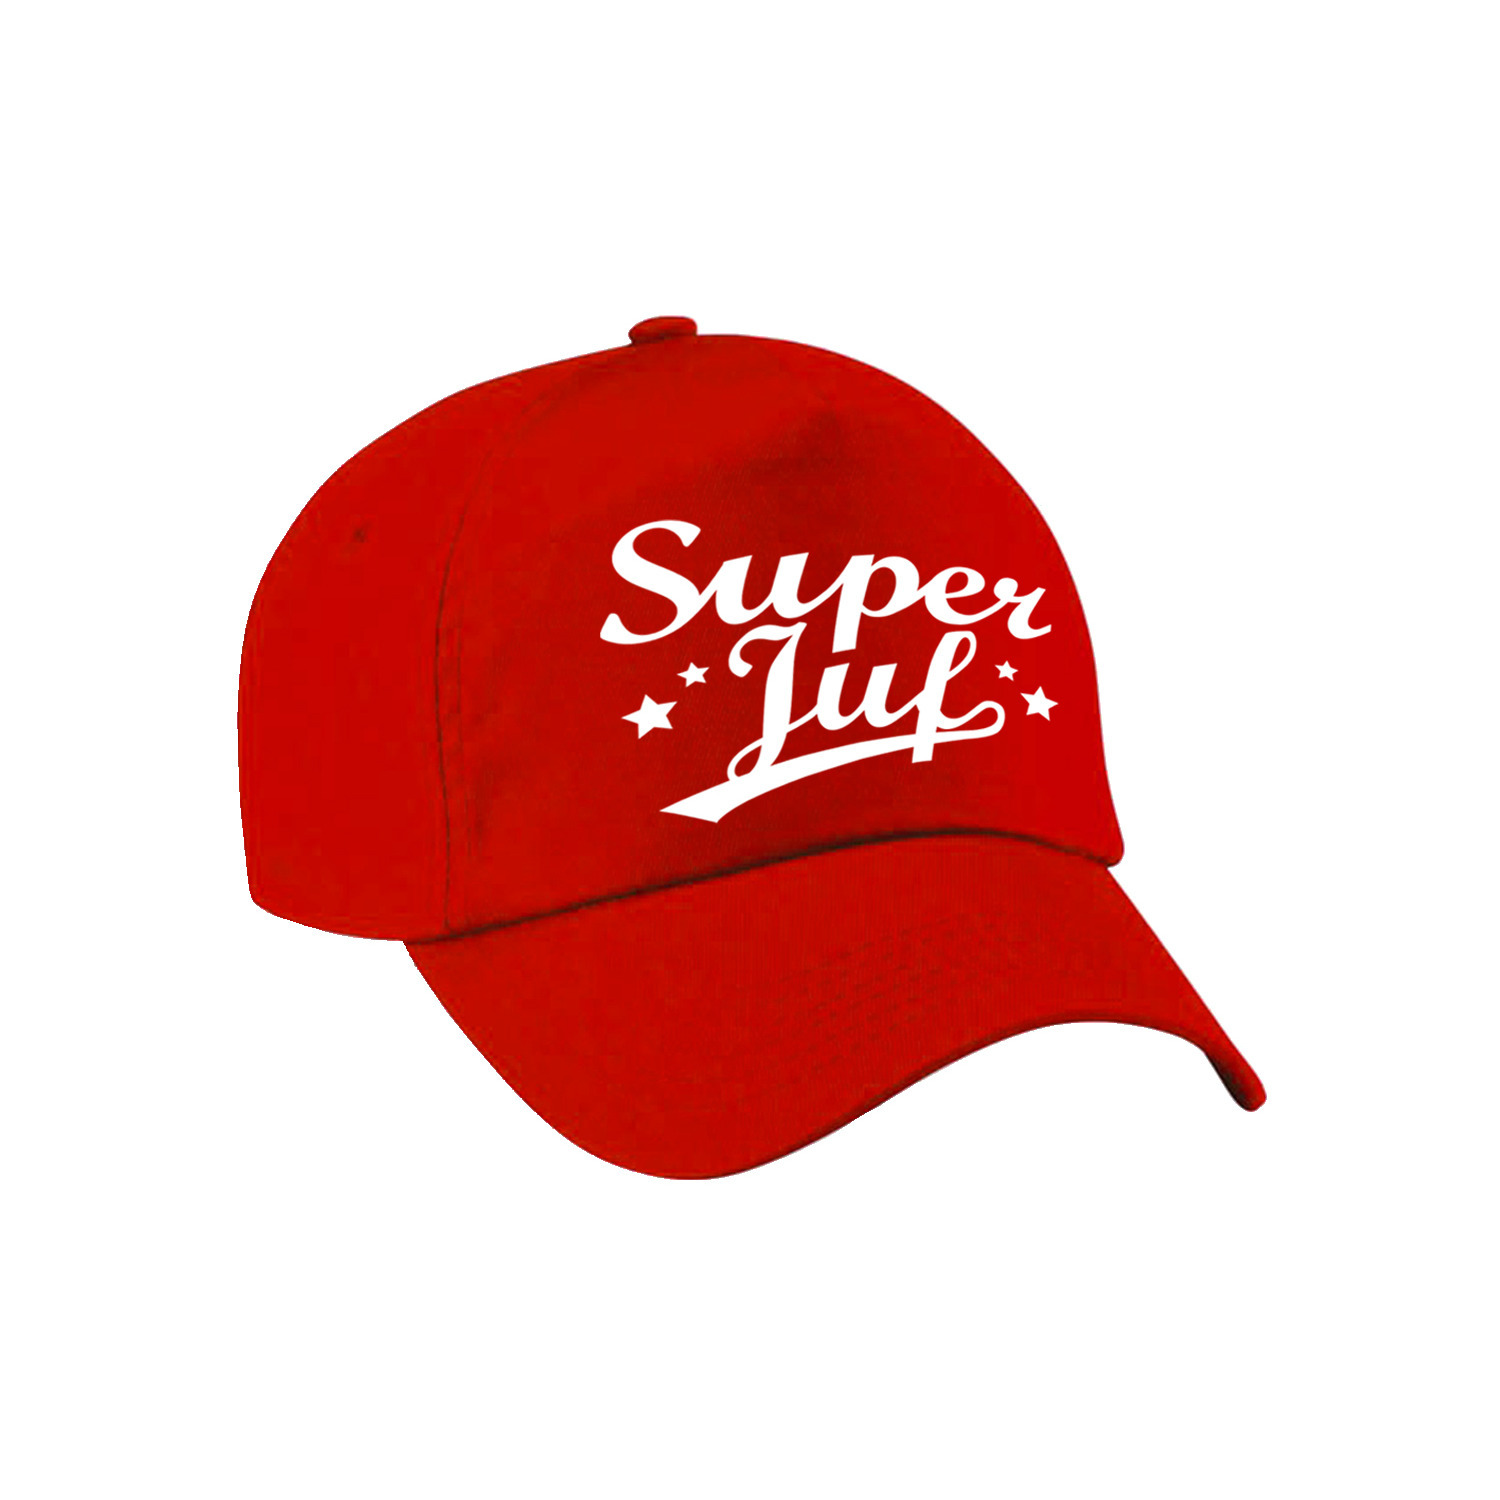 Super juf cadeau pet /cap rood voor dames